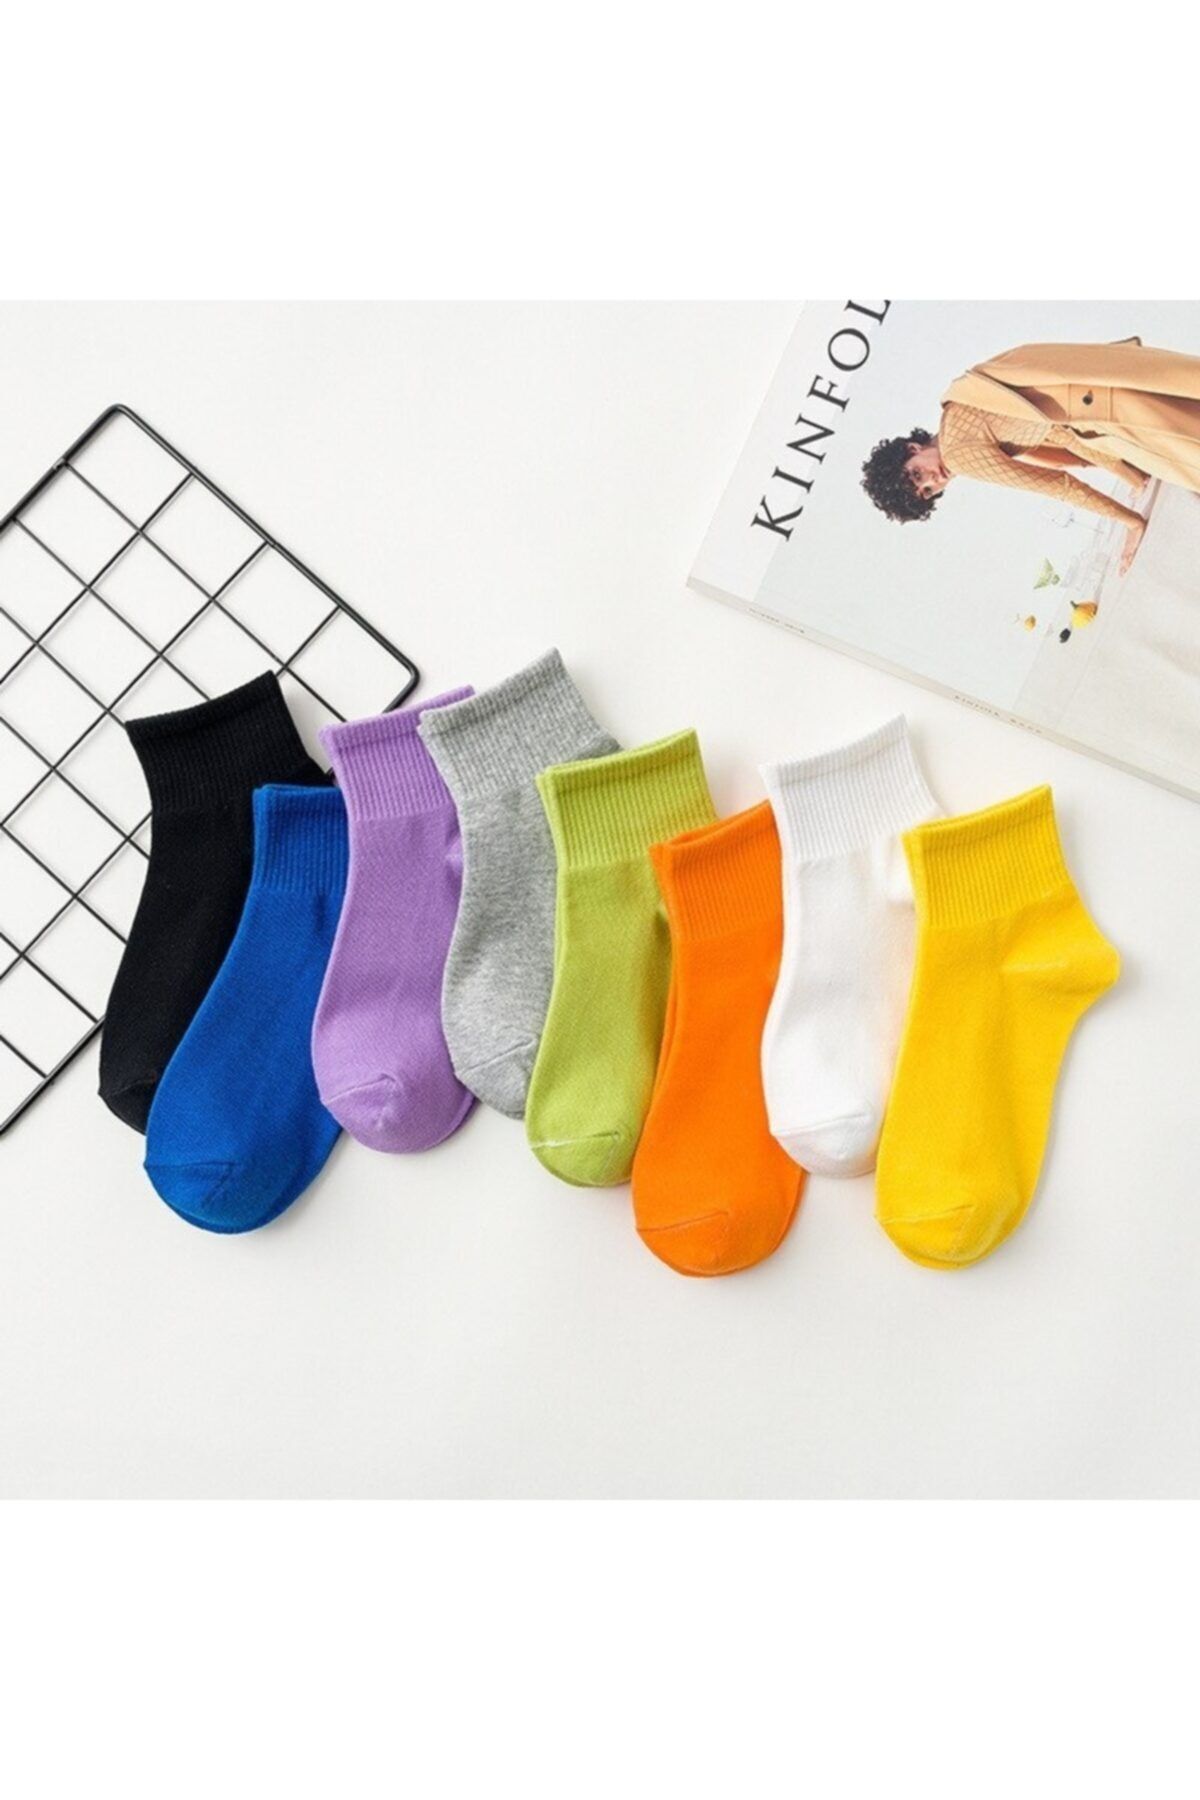 çorapmanya 10 Çift Renkli Kadın Yarım Konç Kolej Çorap